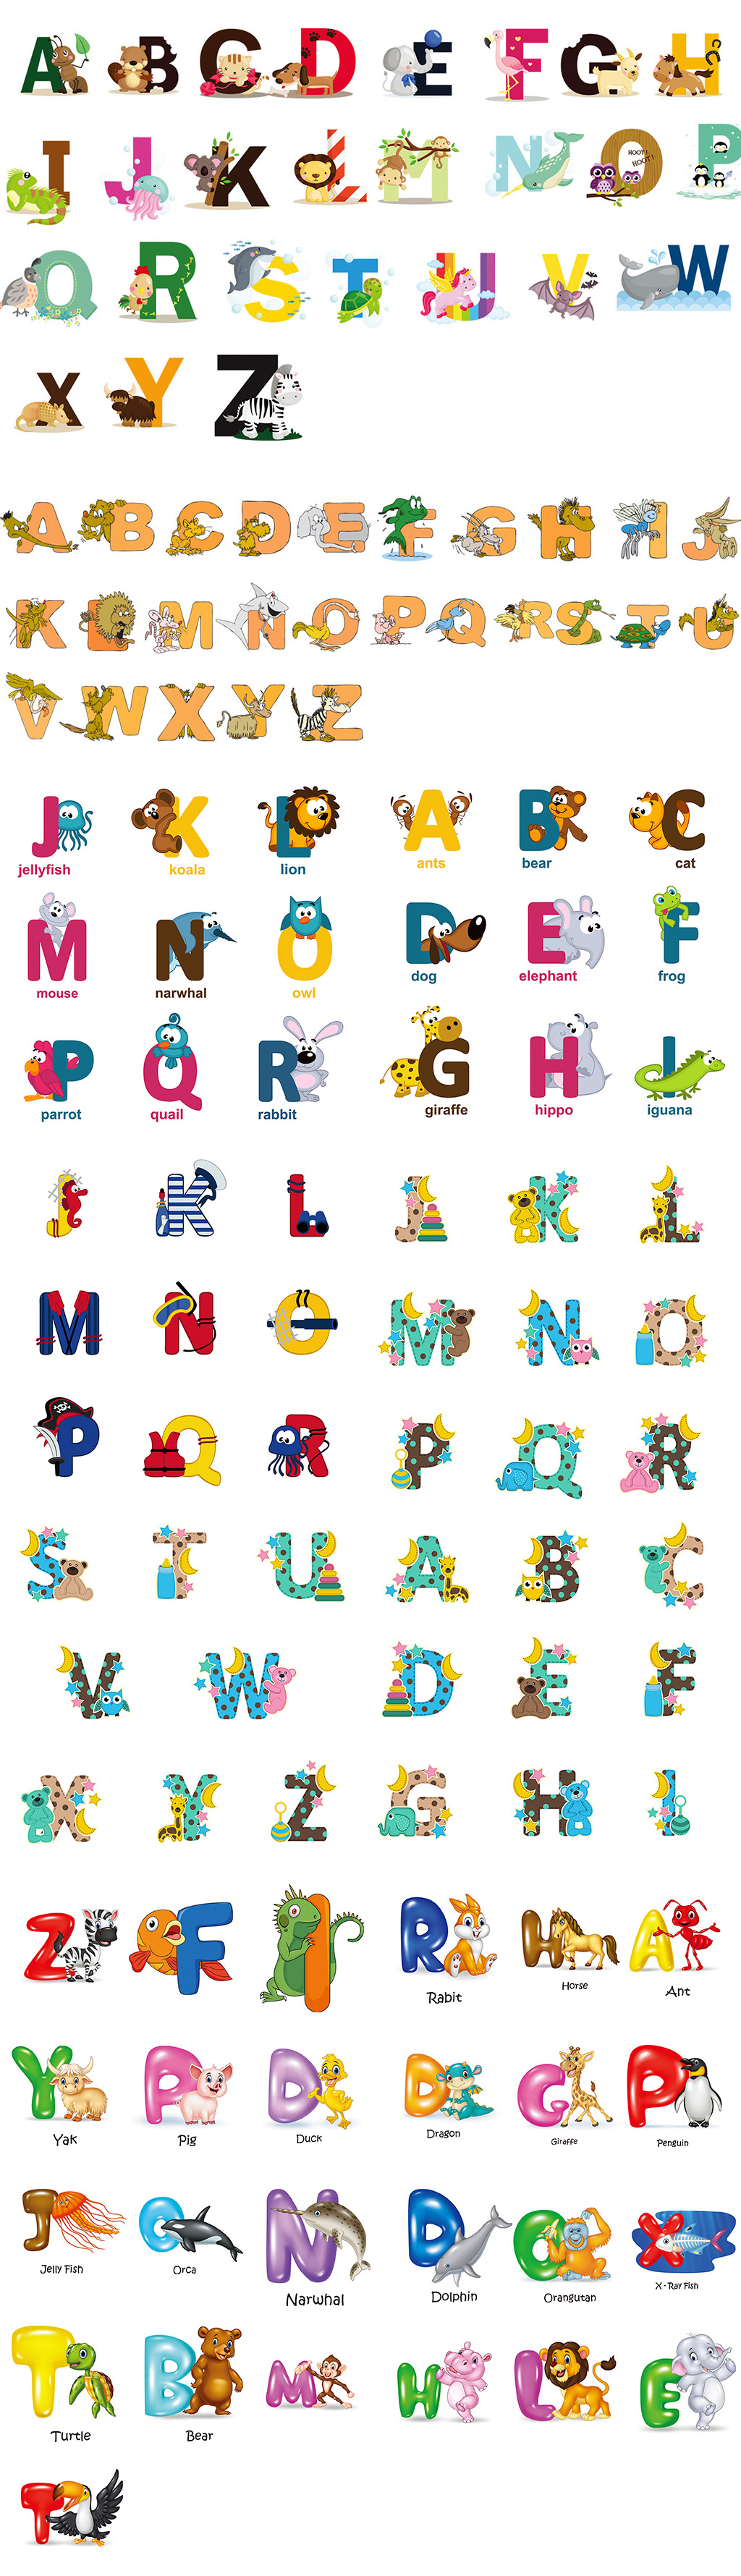 ai矢量卡通创意可爱动物英文字母字体动物园宠物设计素材图片s052